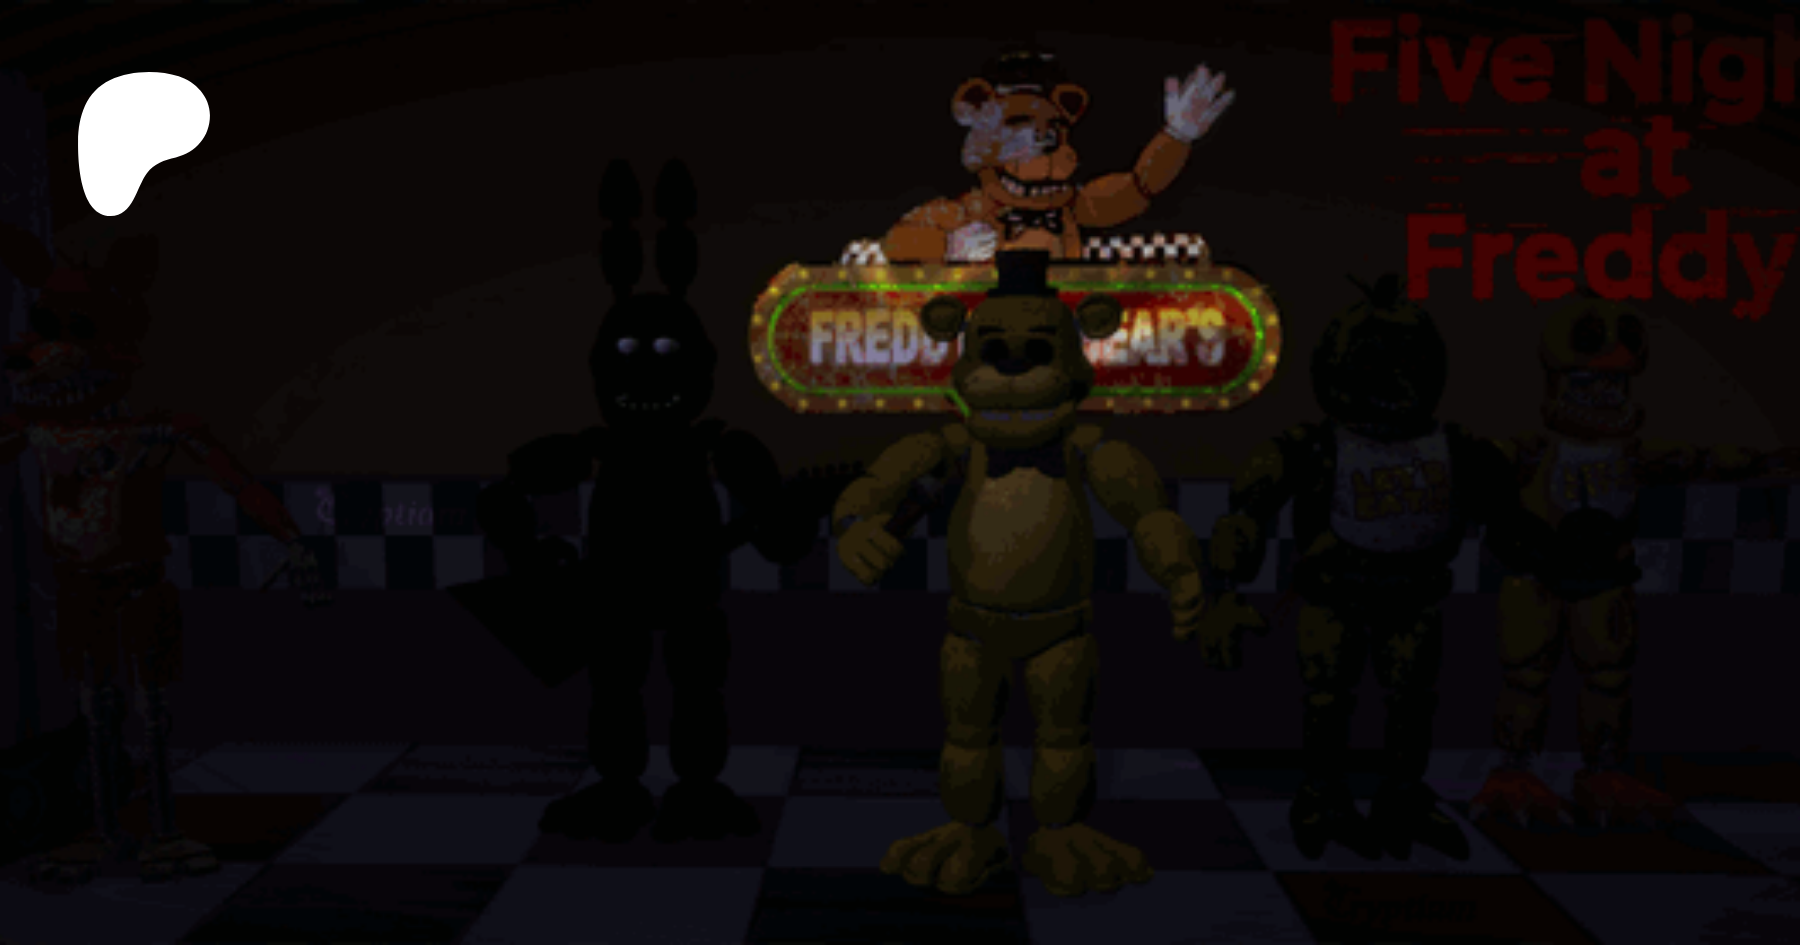 Sims 4 FNAF CC: Freddy, Bonnie, Chica, and Foxy Animatronics (deco)